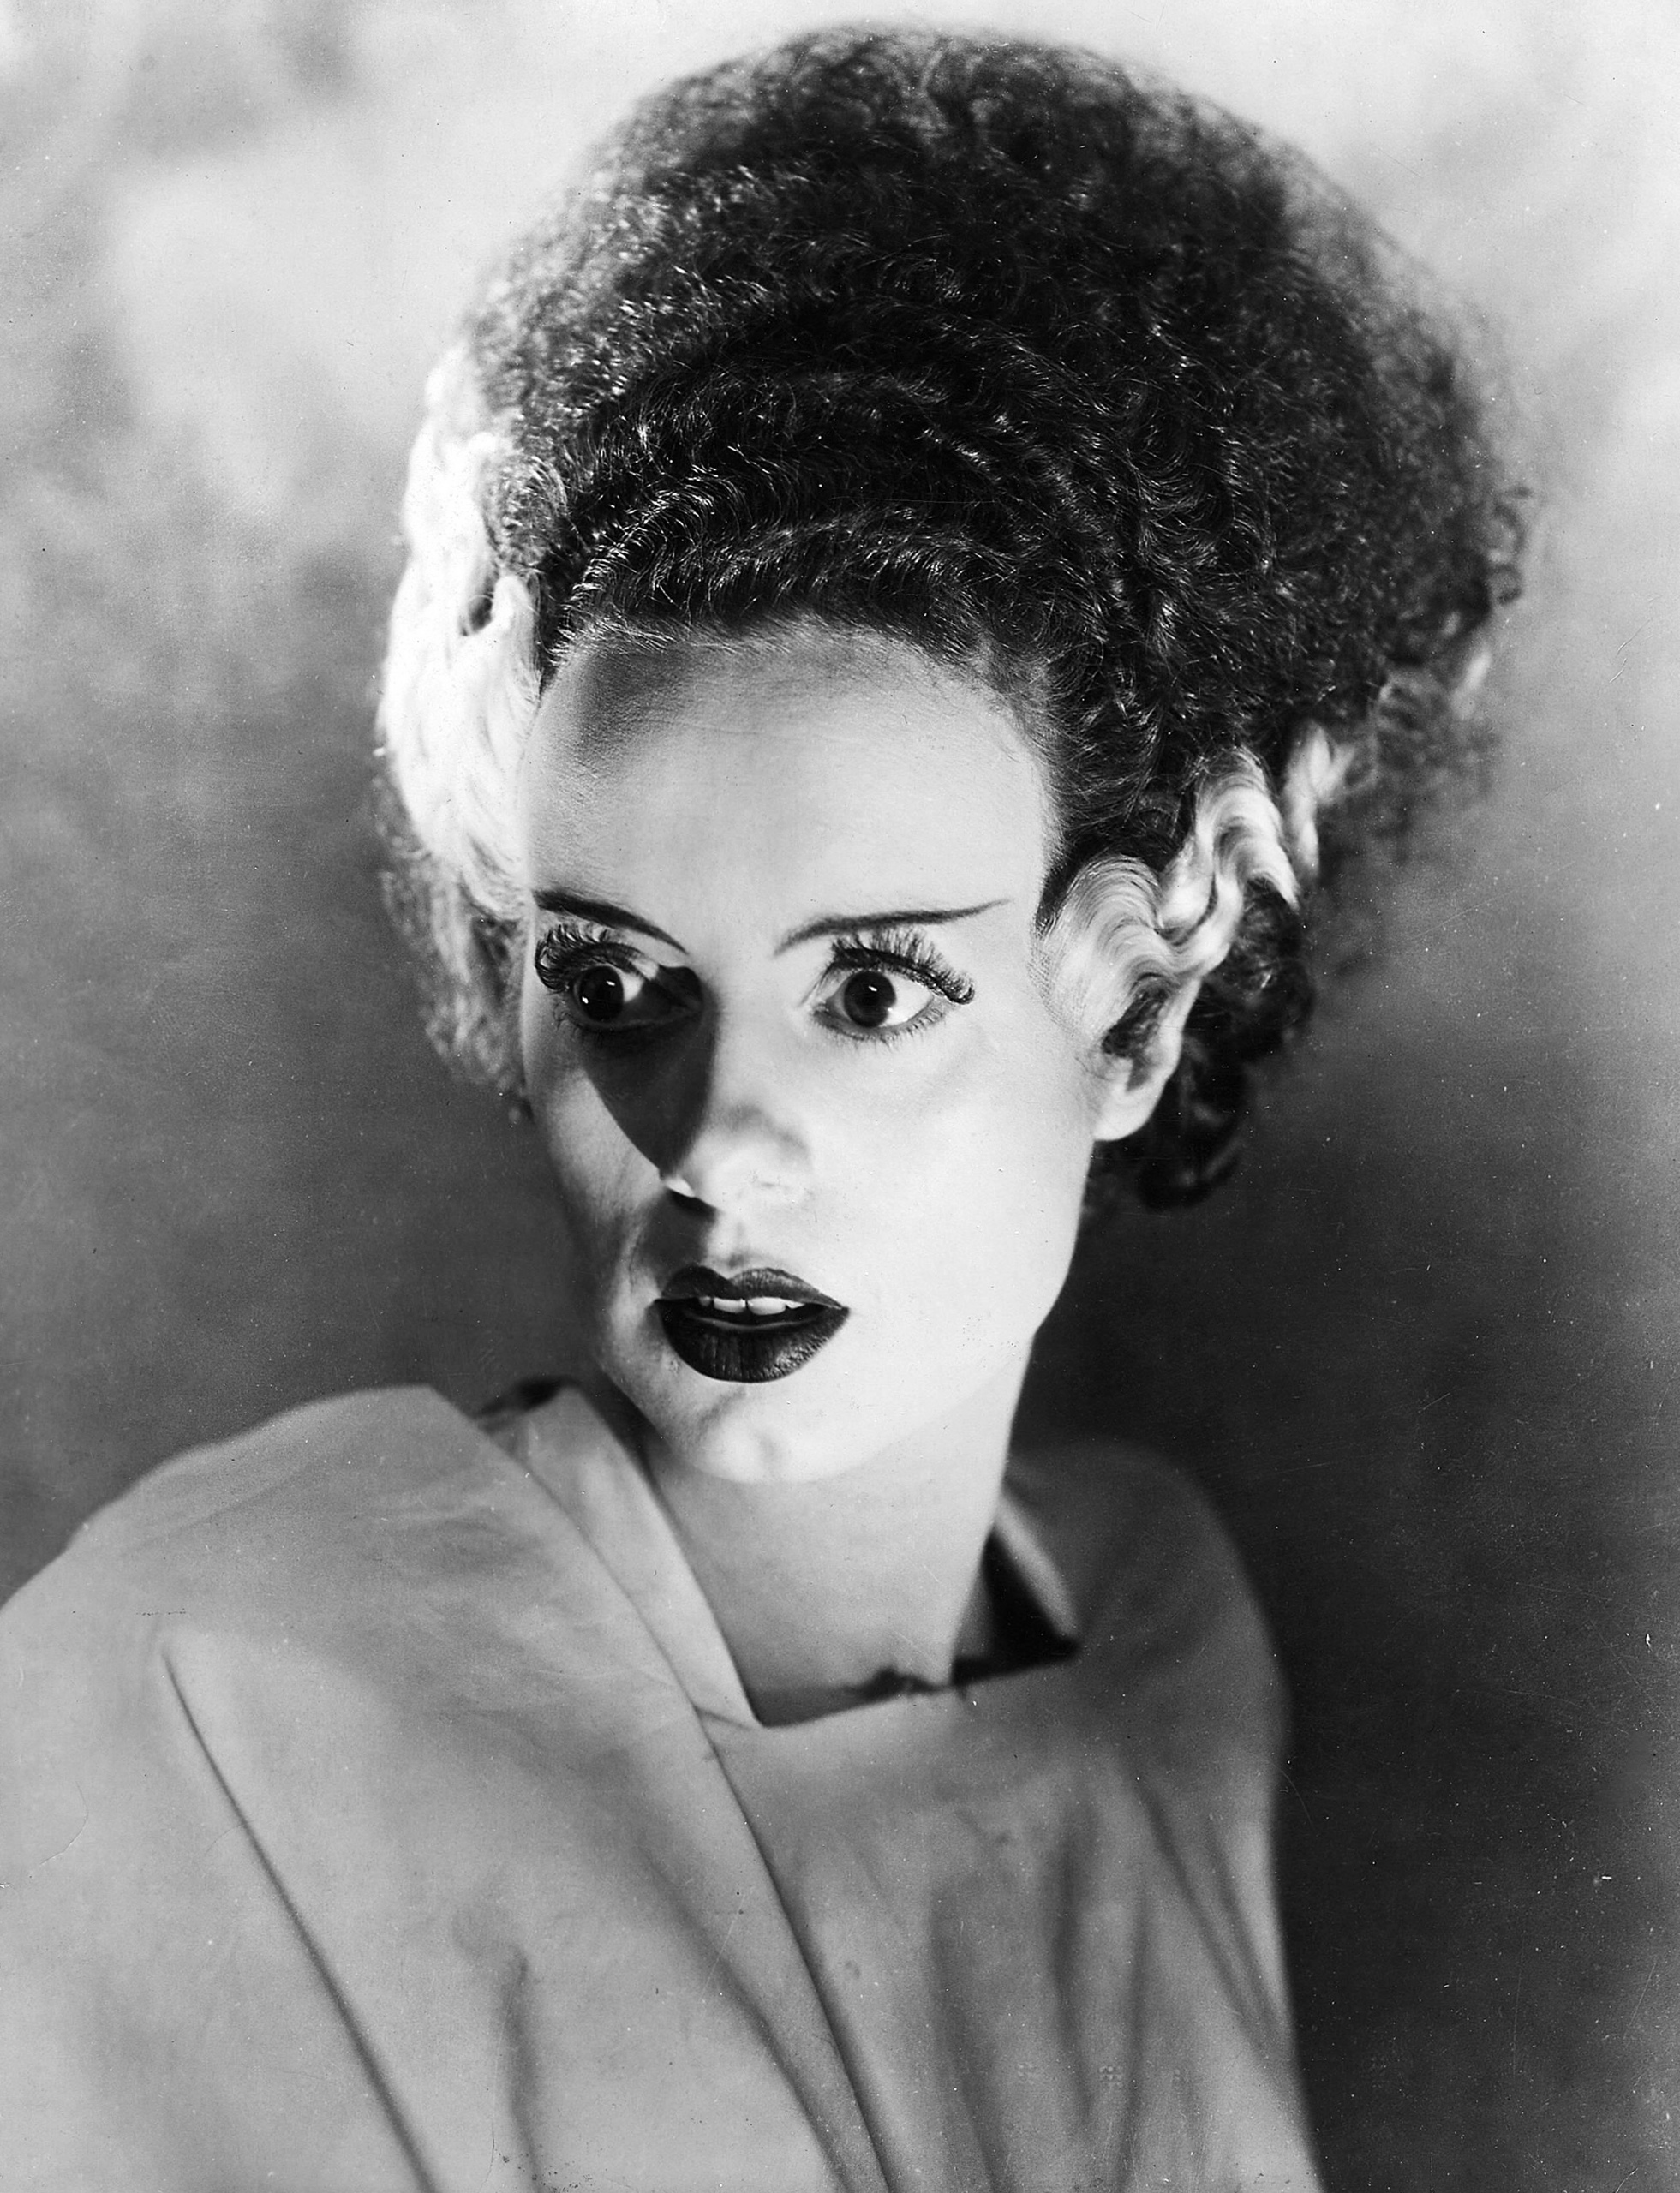 Bride Of Frankenstein Image Stills HD Wallpaper And Background Photos